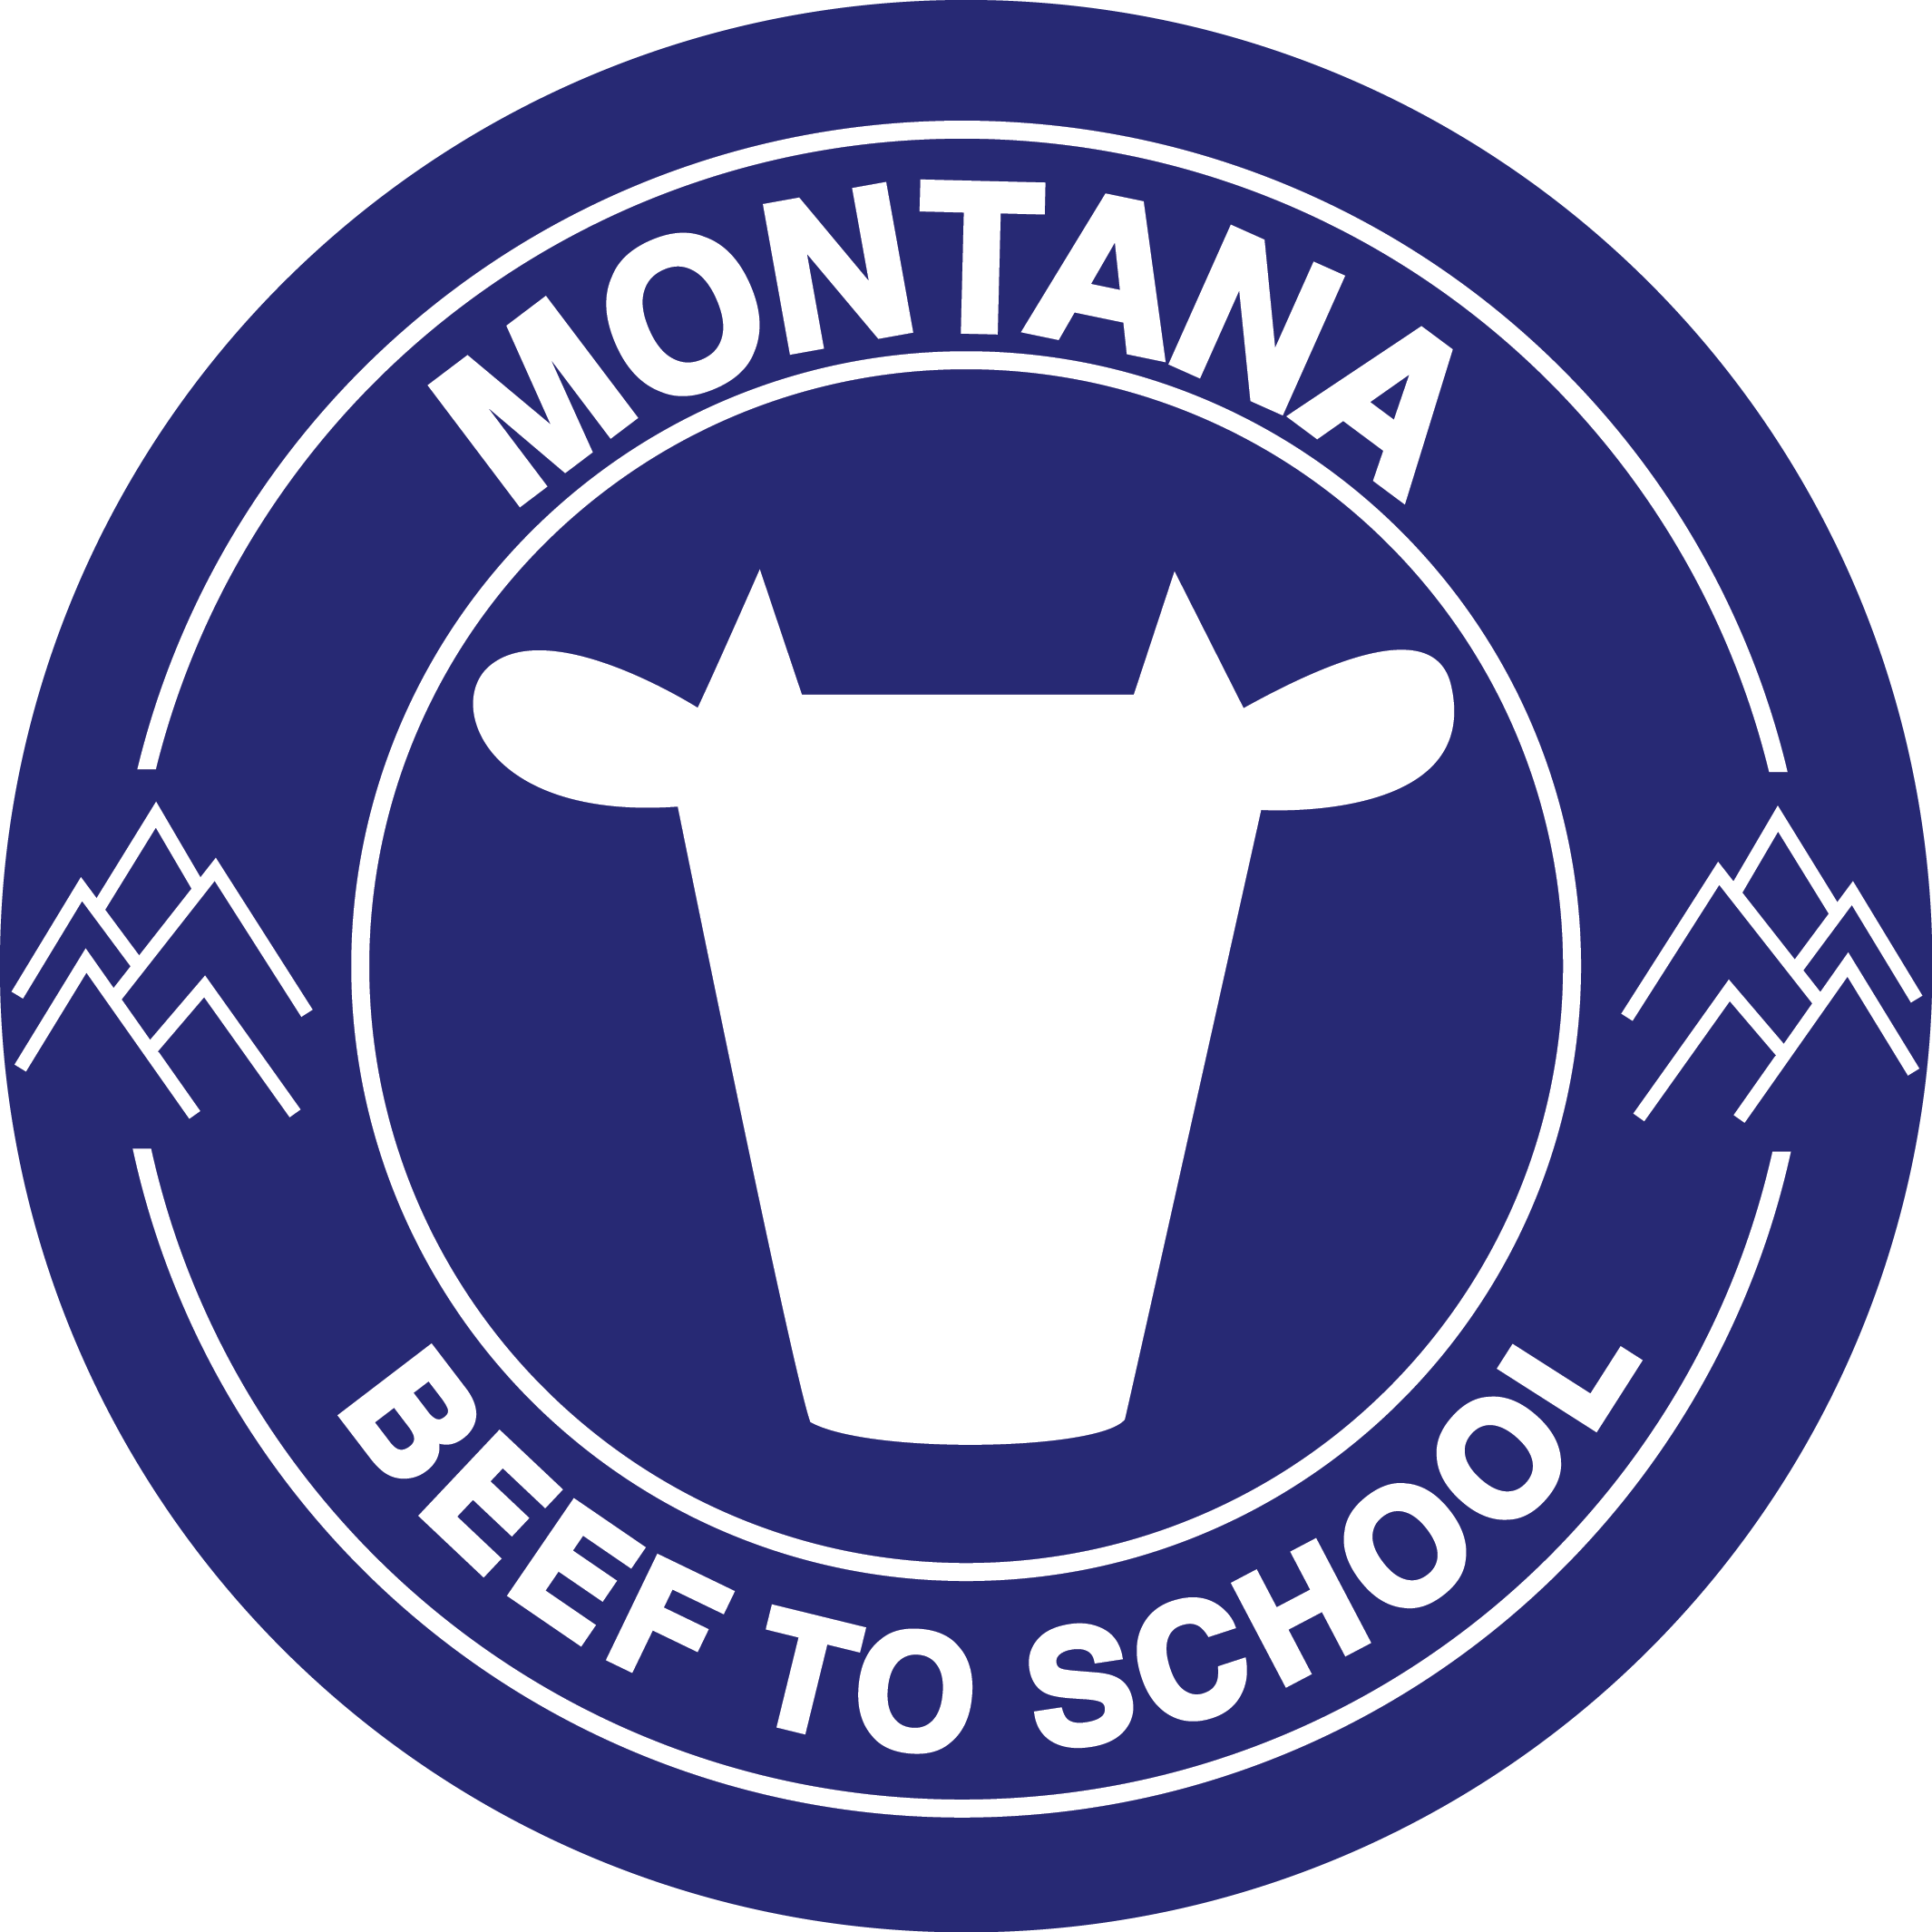 montana Beef to school logo design